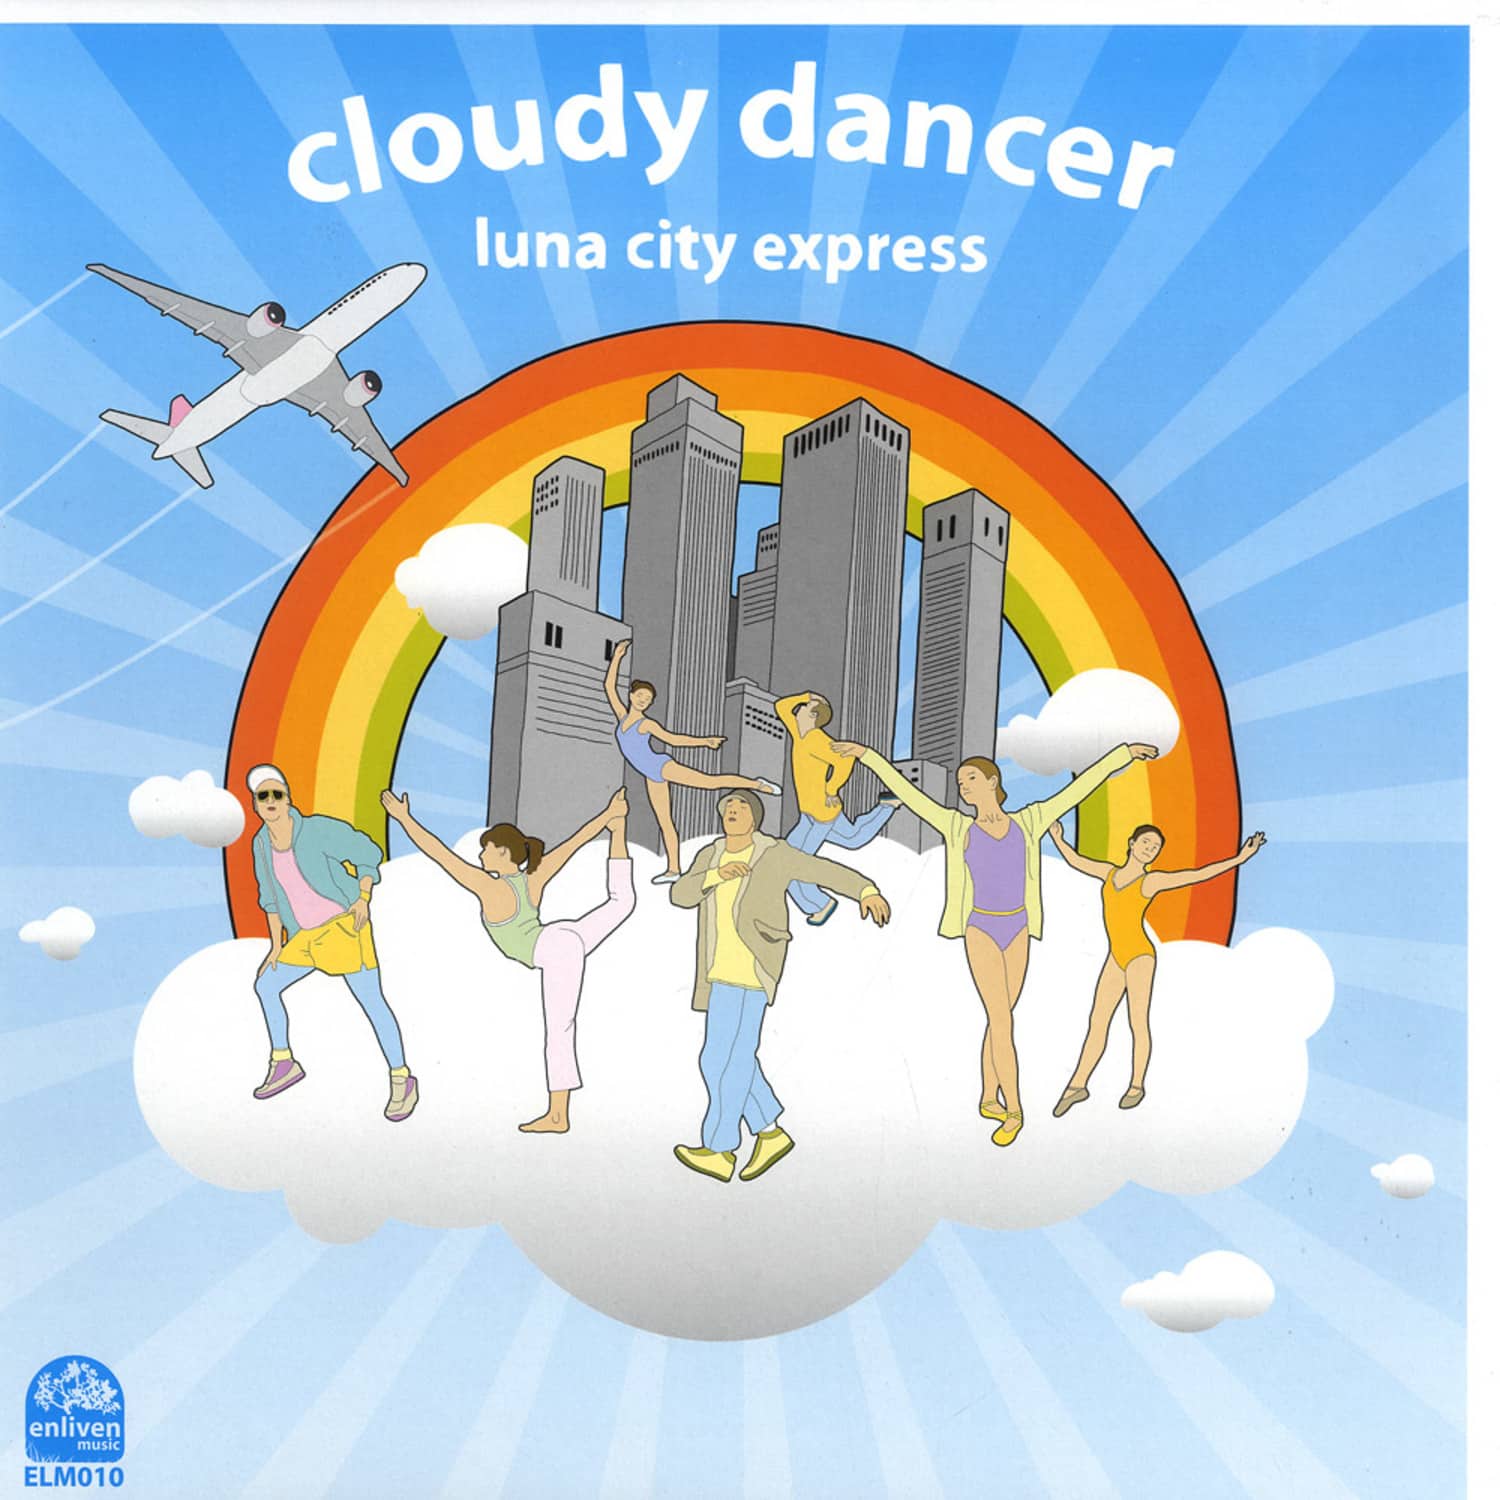 Luna City Express - CLOUDY DANCER